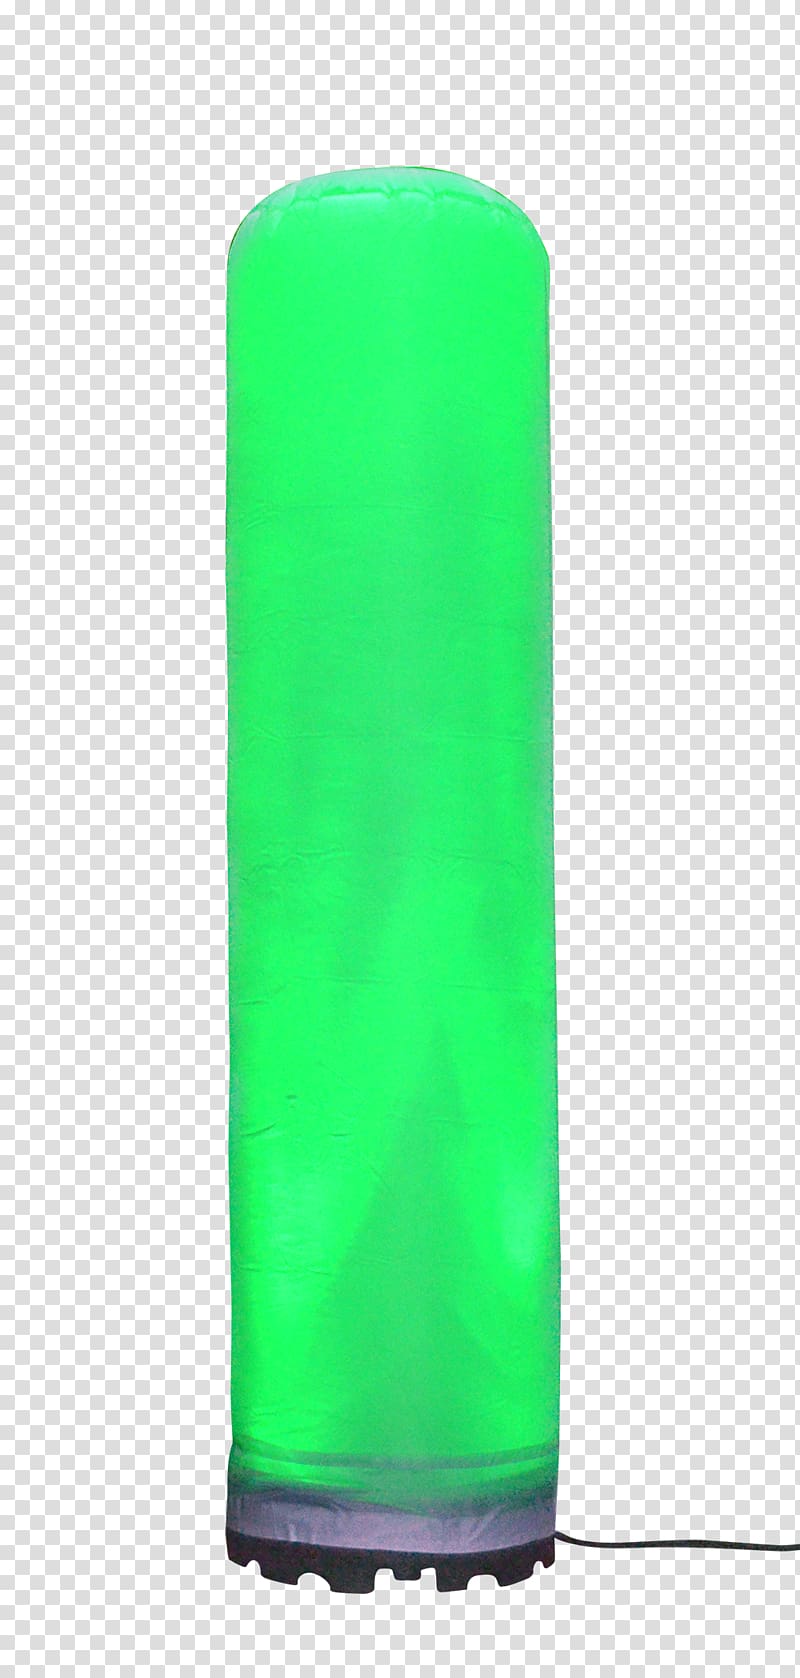 Cylinder, design transparent background PNG clipart